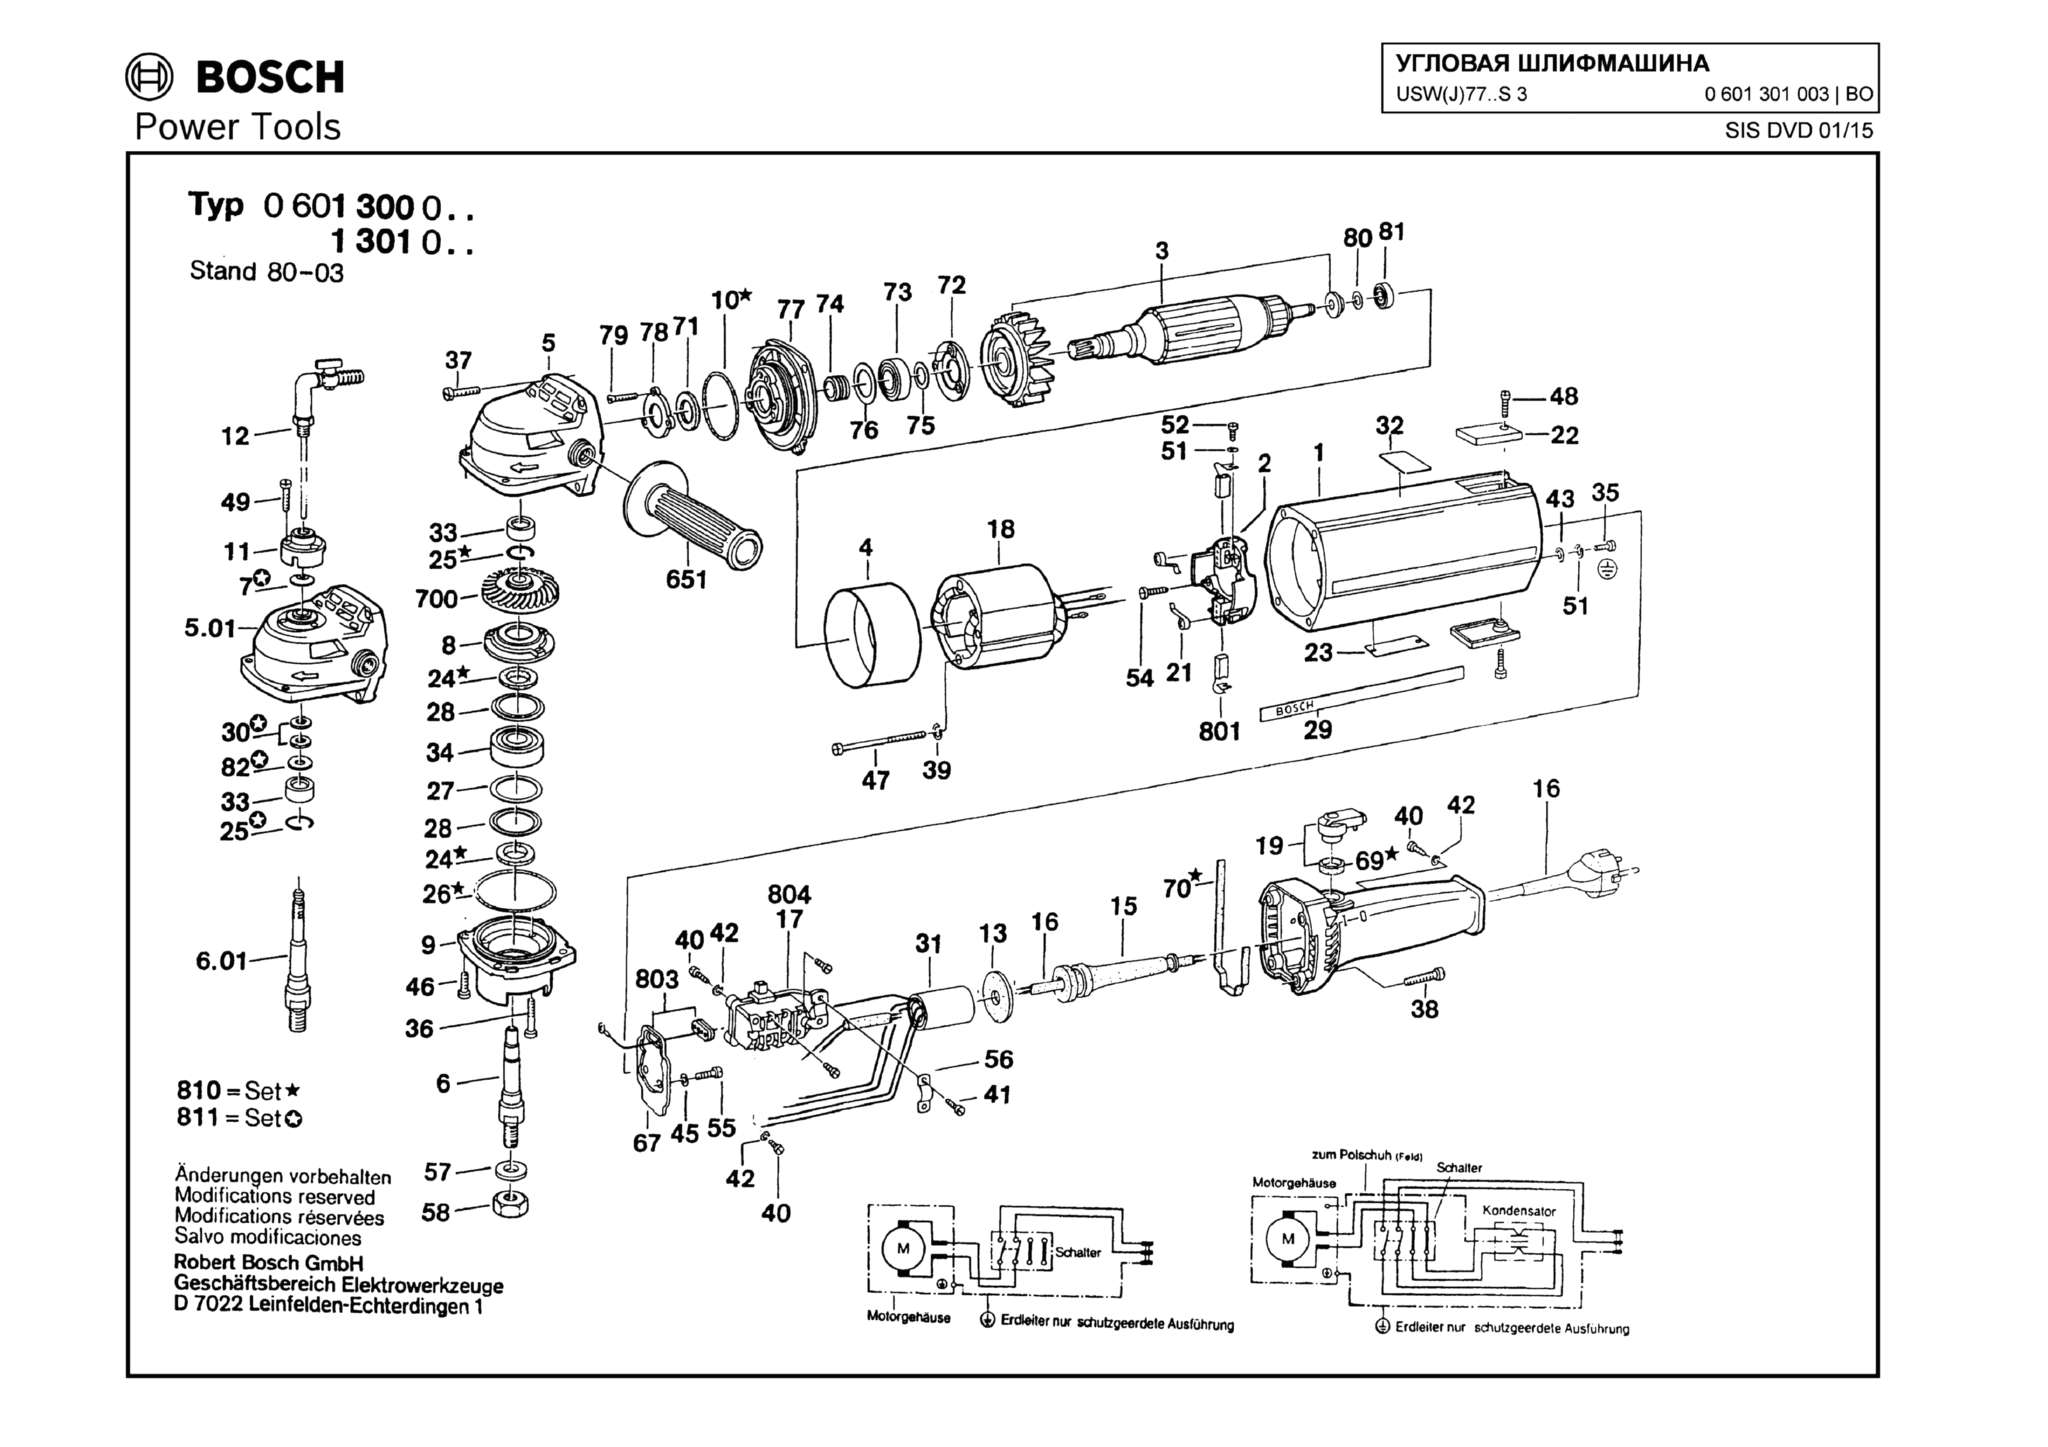 Запчасти, схема и деталировка Bosch USW(J)77..S 3 (ТИП 0601301003)